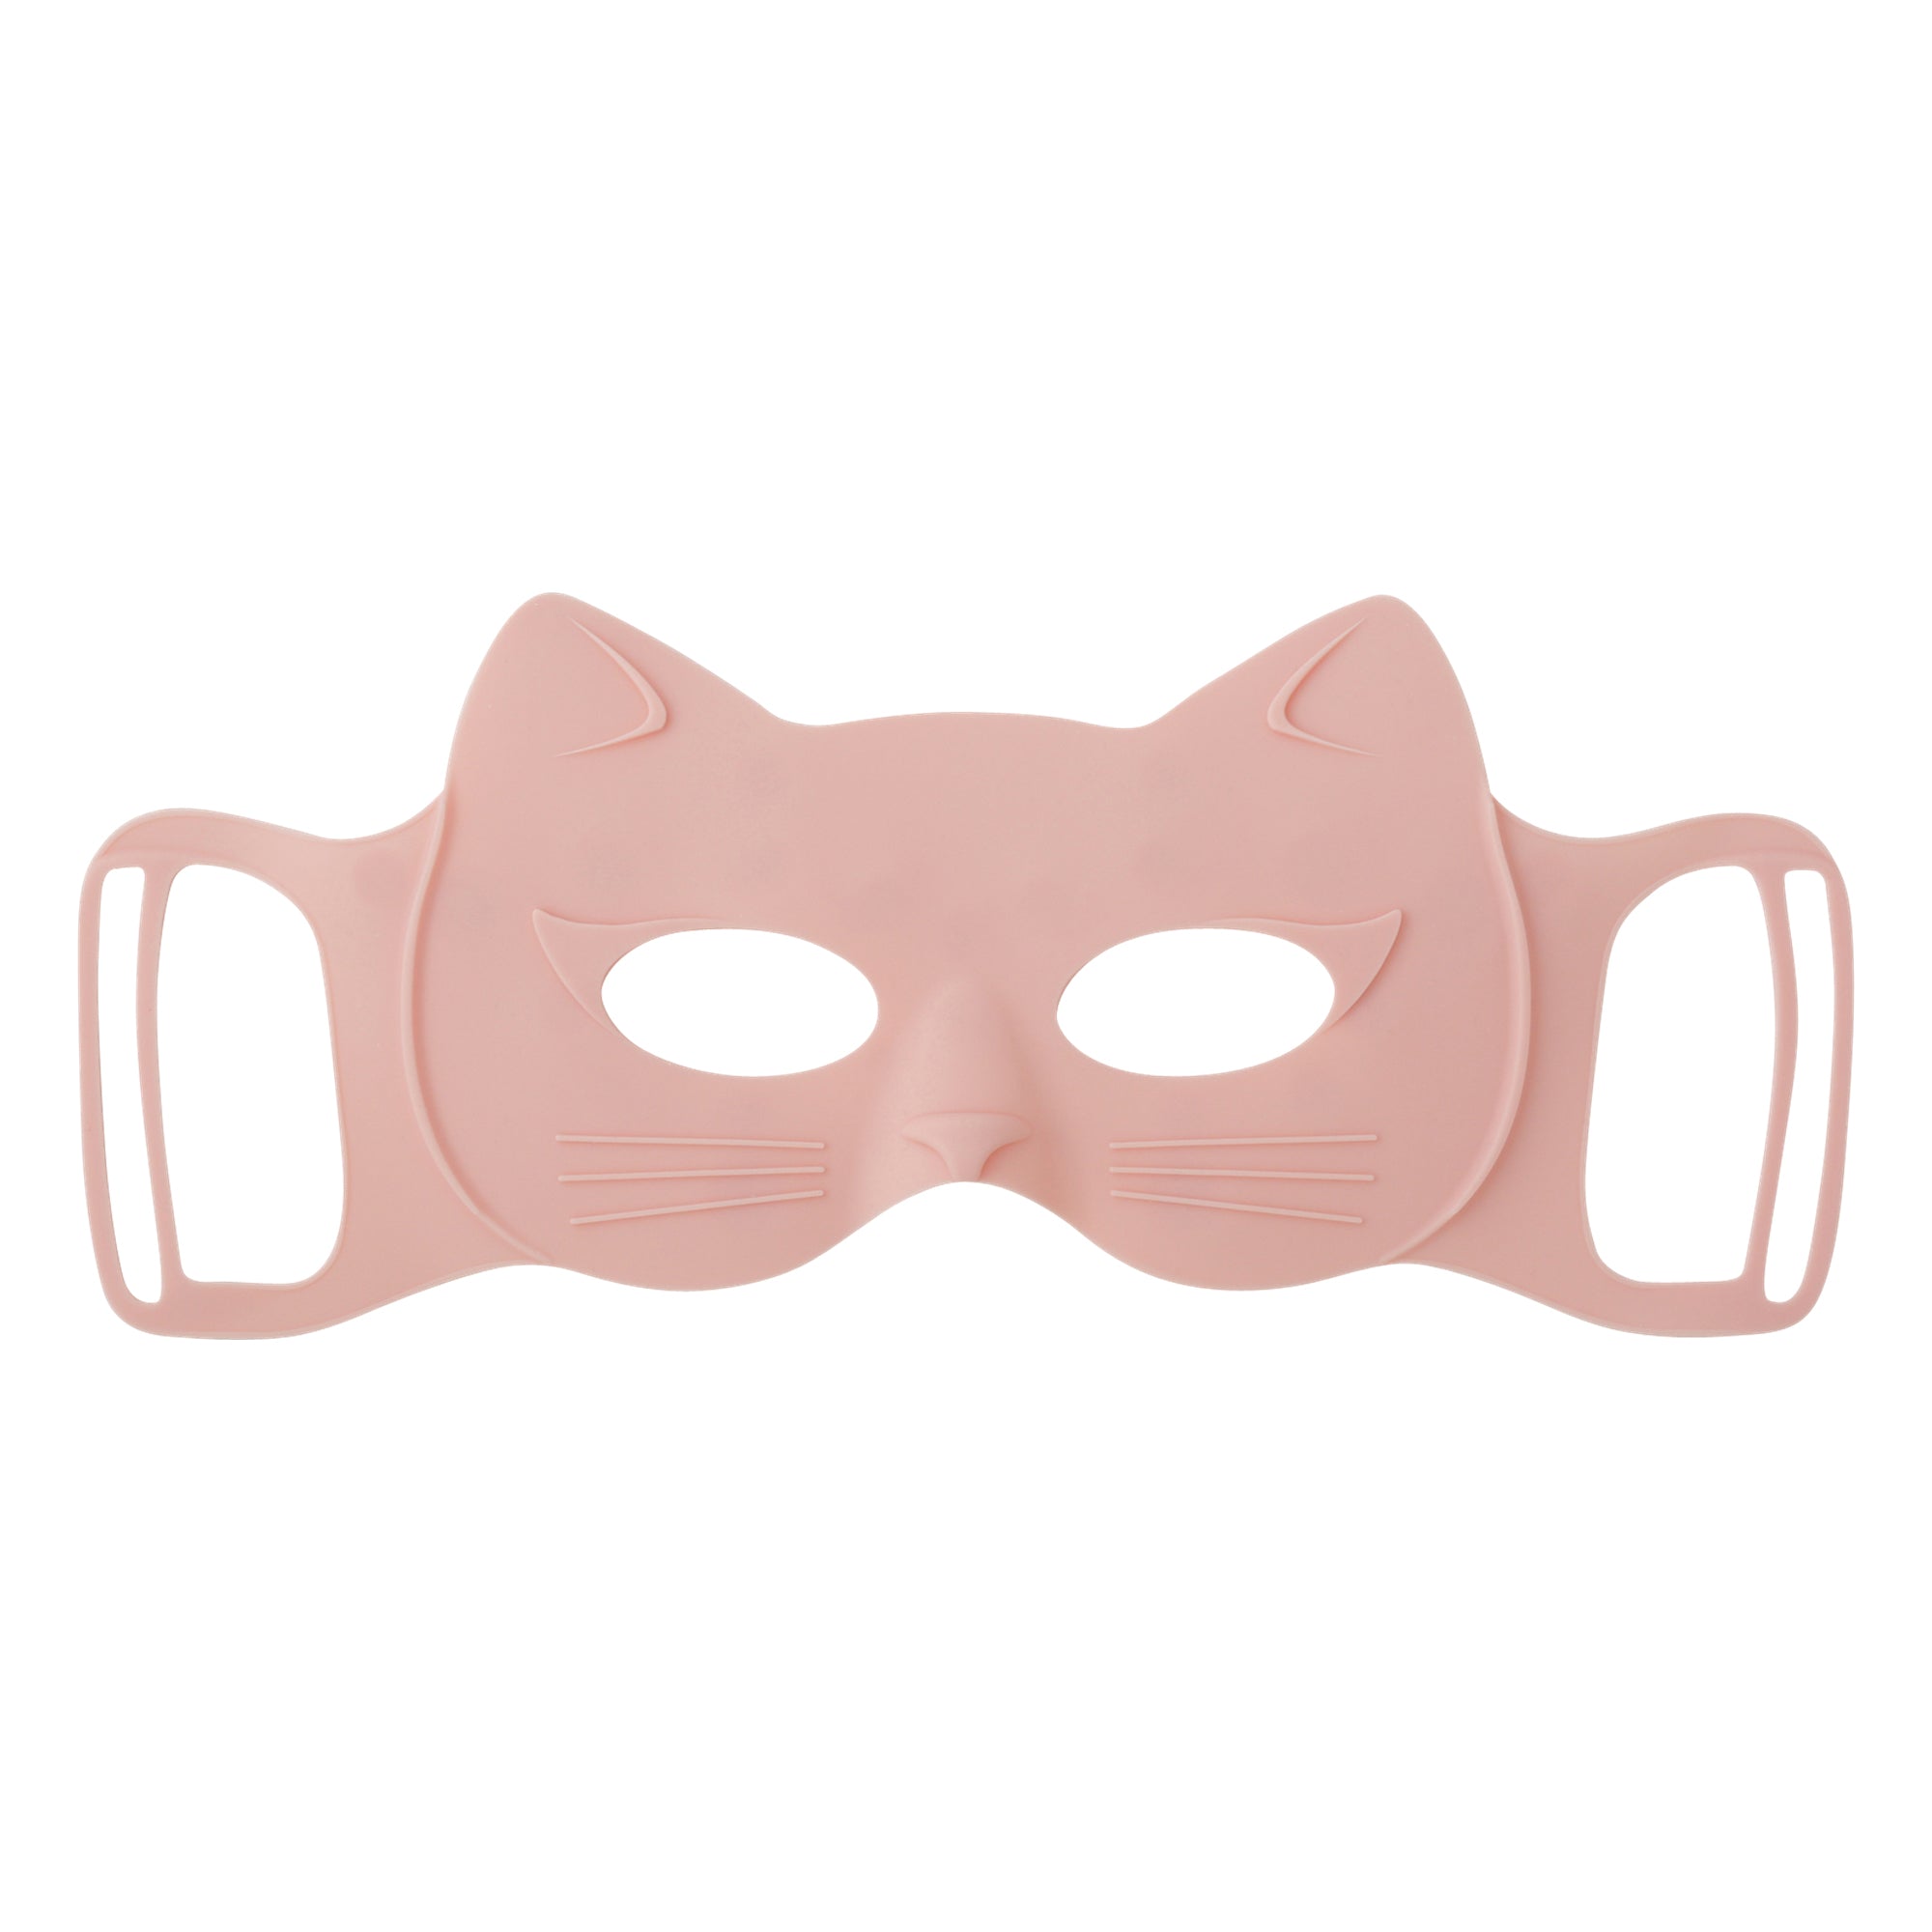 프랑프랑 일본 수면 안대 릴랙싱 아이 마스크 먀우먀우 핑크  